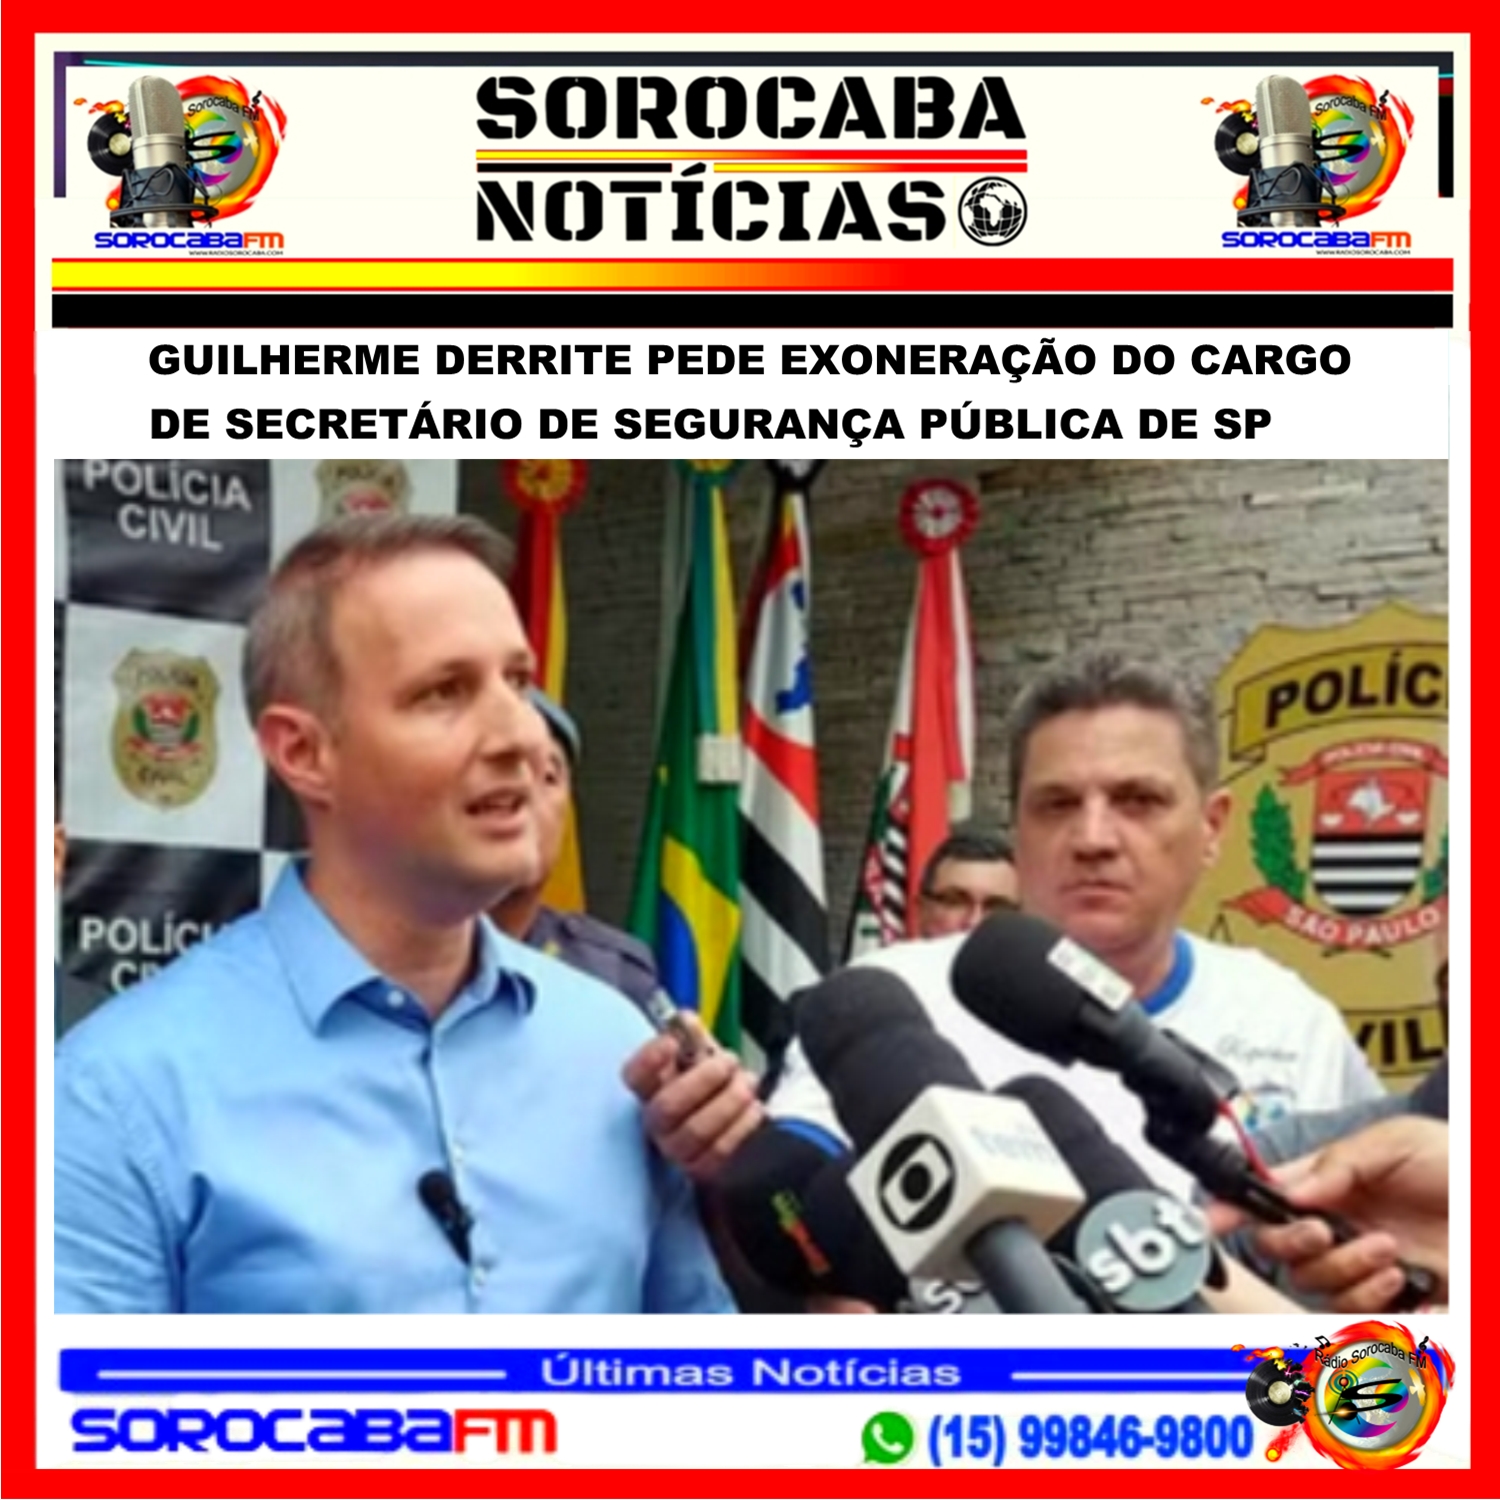 Guilherme Derrite pede exoneração do cargo de Secretário de Segurança Pública de SP